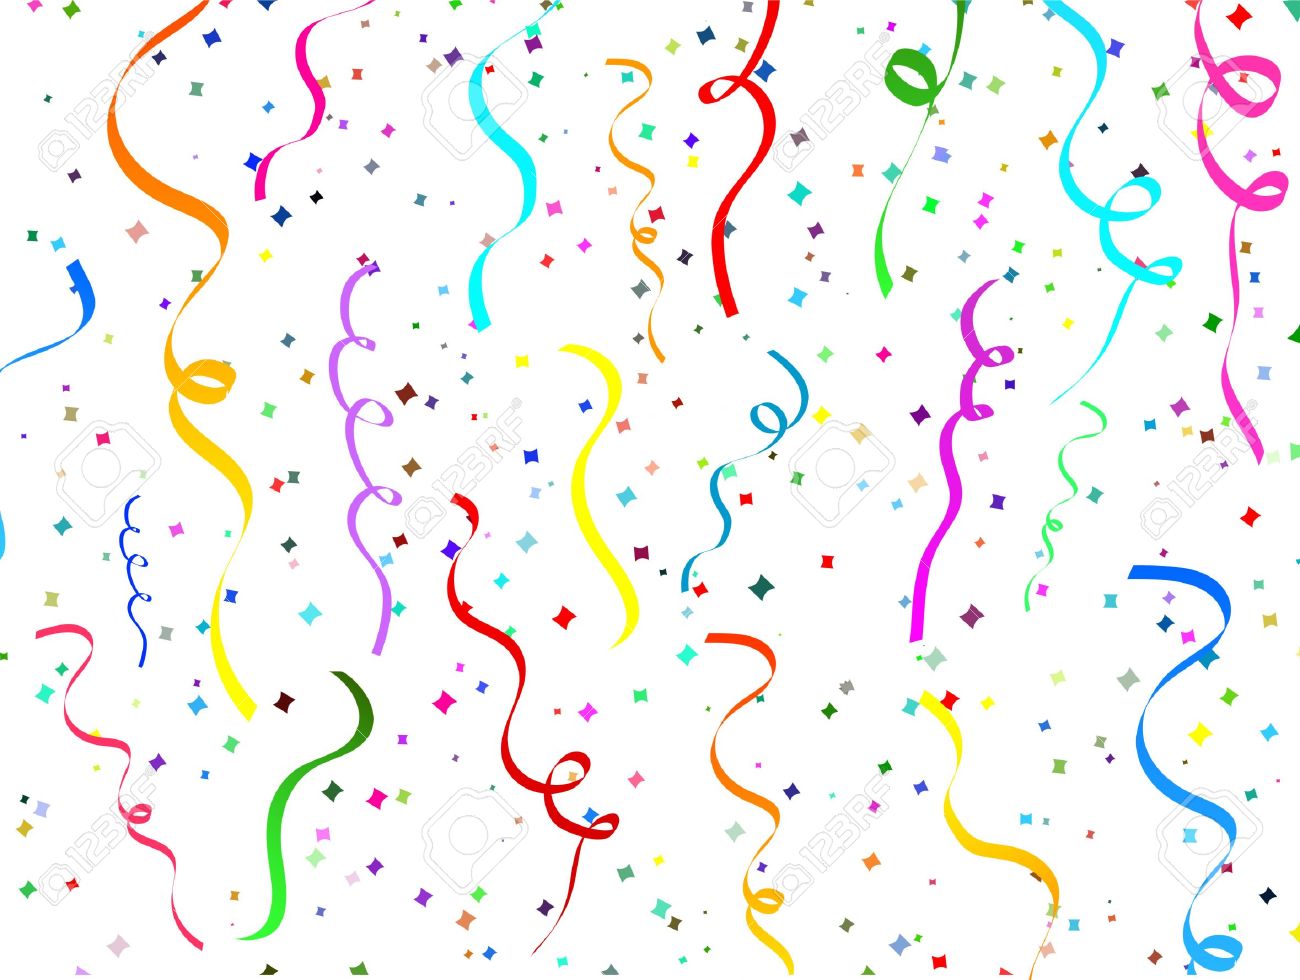 Confetti Clip art - Confetti PNG Image png download - 600*558 - Free ...